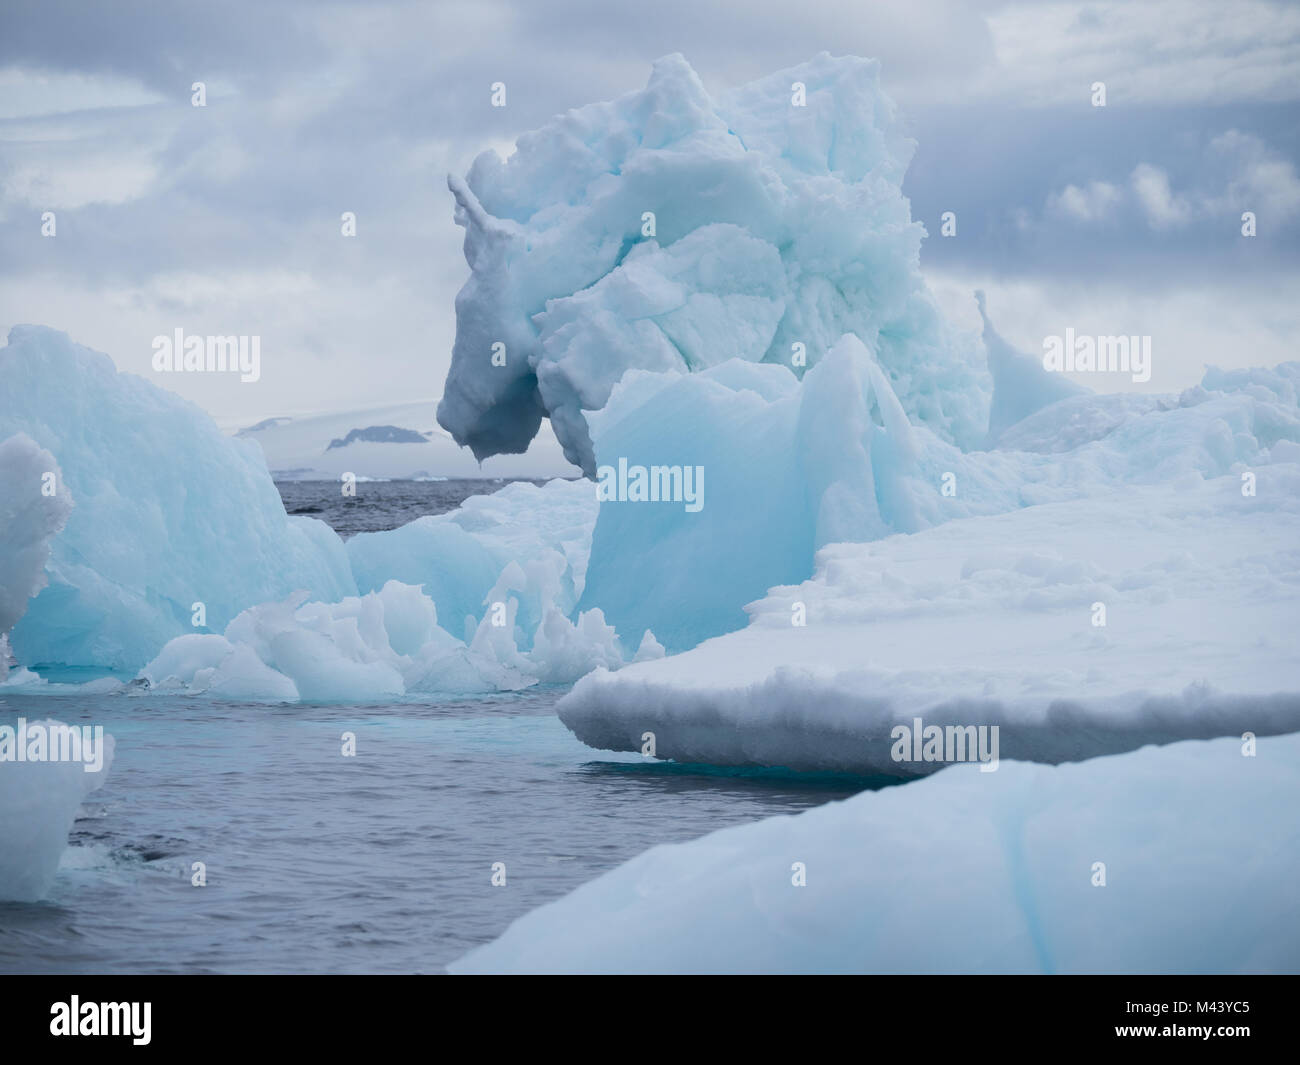 Bébé bleu, gris bleu et gris des icebergs dans l'Antarctique Esperanza en flottant dans l'eau bleu acier de l'océan Austral. Ciel nuageux est ci-dessus. Banque D'Images